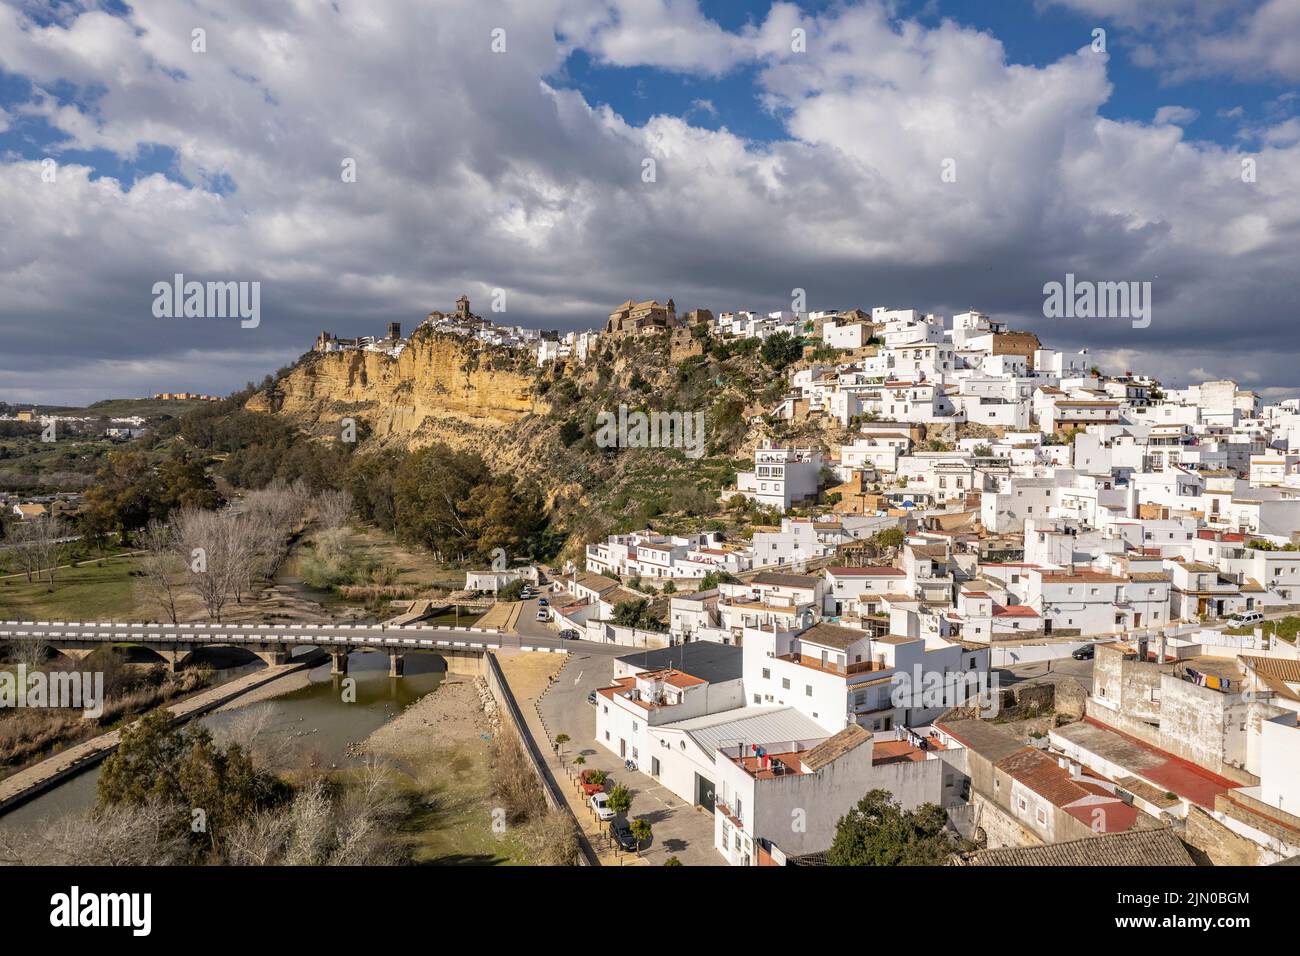 Die weissen Häuser von Arcos de la Frontera von oben gesehen, Andalusien, Spanien | Las casas blancas de Arcos de la Frontera vistas desde arriba, Andalu Foto de stock